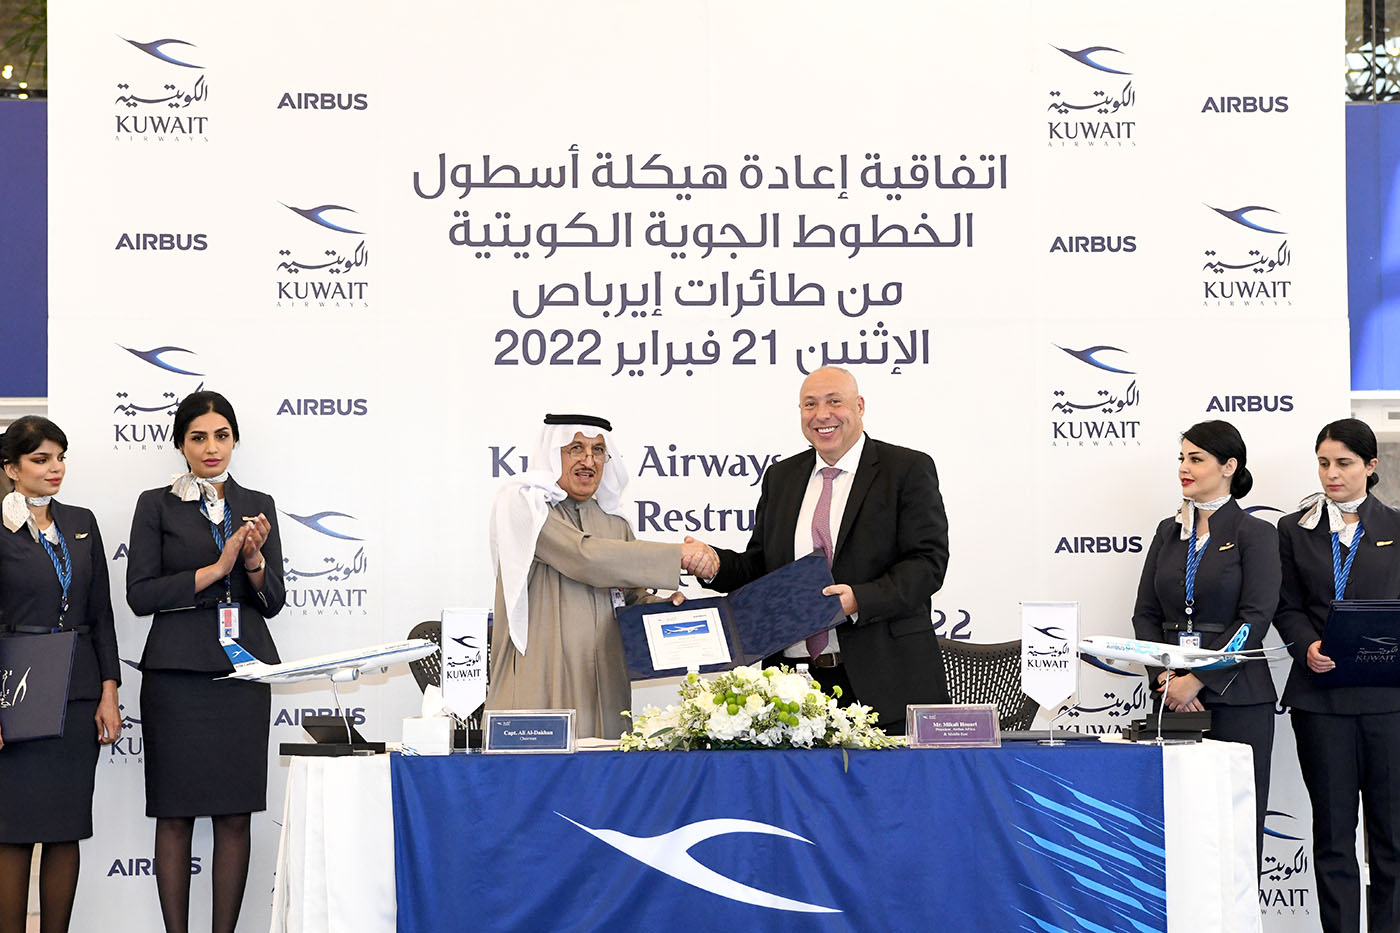 (الخطوط الكويتية) توقع اتفاقية مع (إيرباص) لإعادة هيكلة 31 طائرة من أسطولها بقيمة 6 مليارات دولار